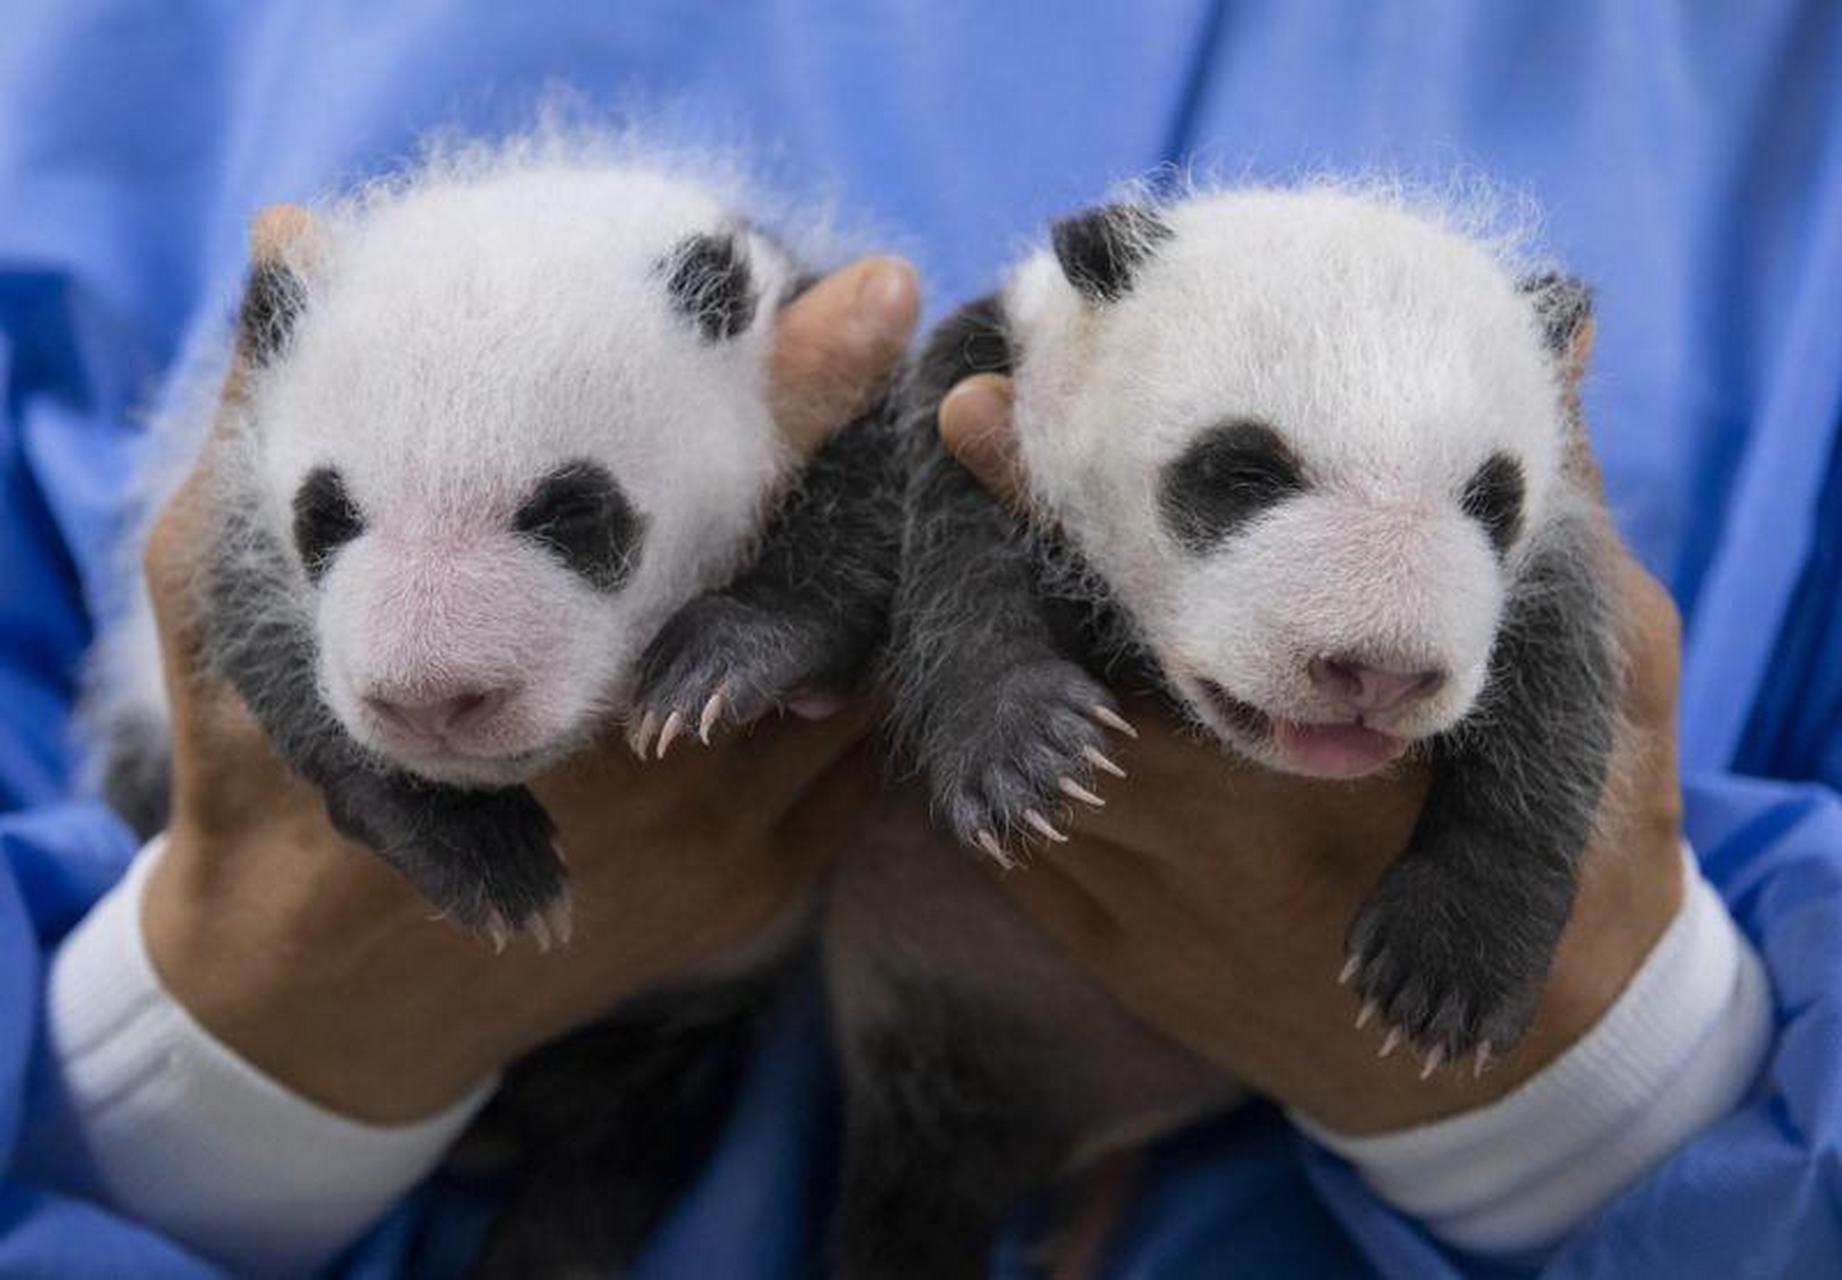 在韩大熊猫双胞胎满月照曝光 老二吐舌头卖萌】 据韩联社报道,8月7日